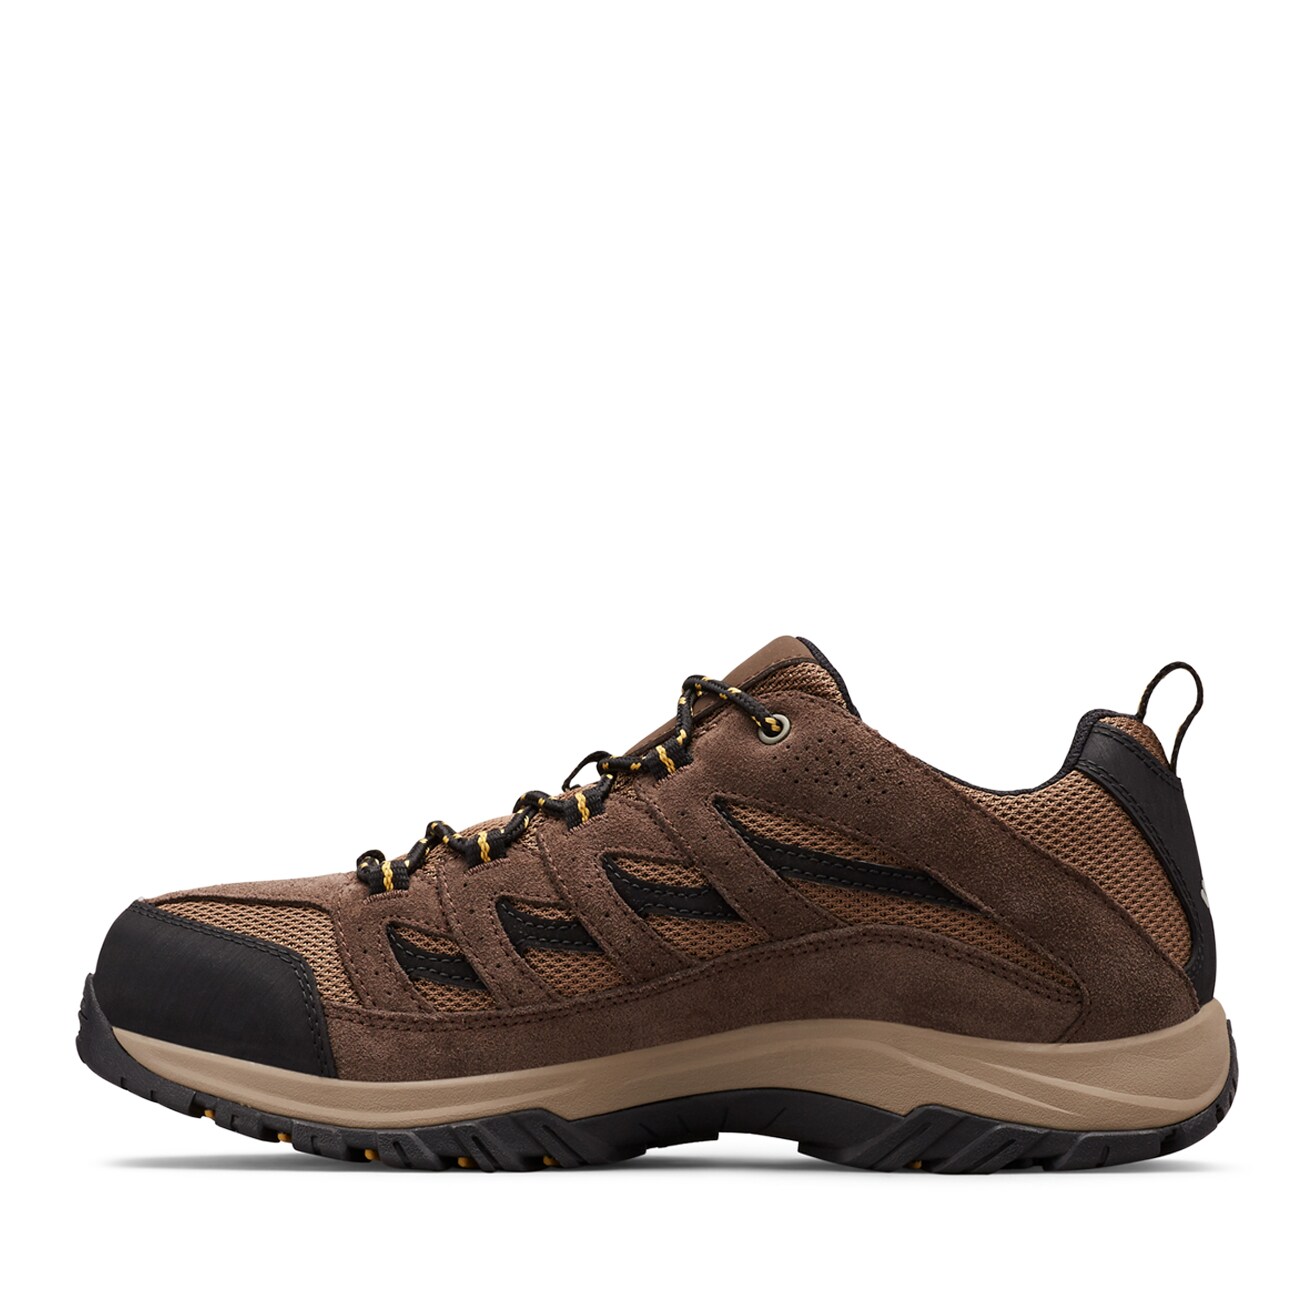 Men's Crestwood Wide Width Hiking Sneaker